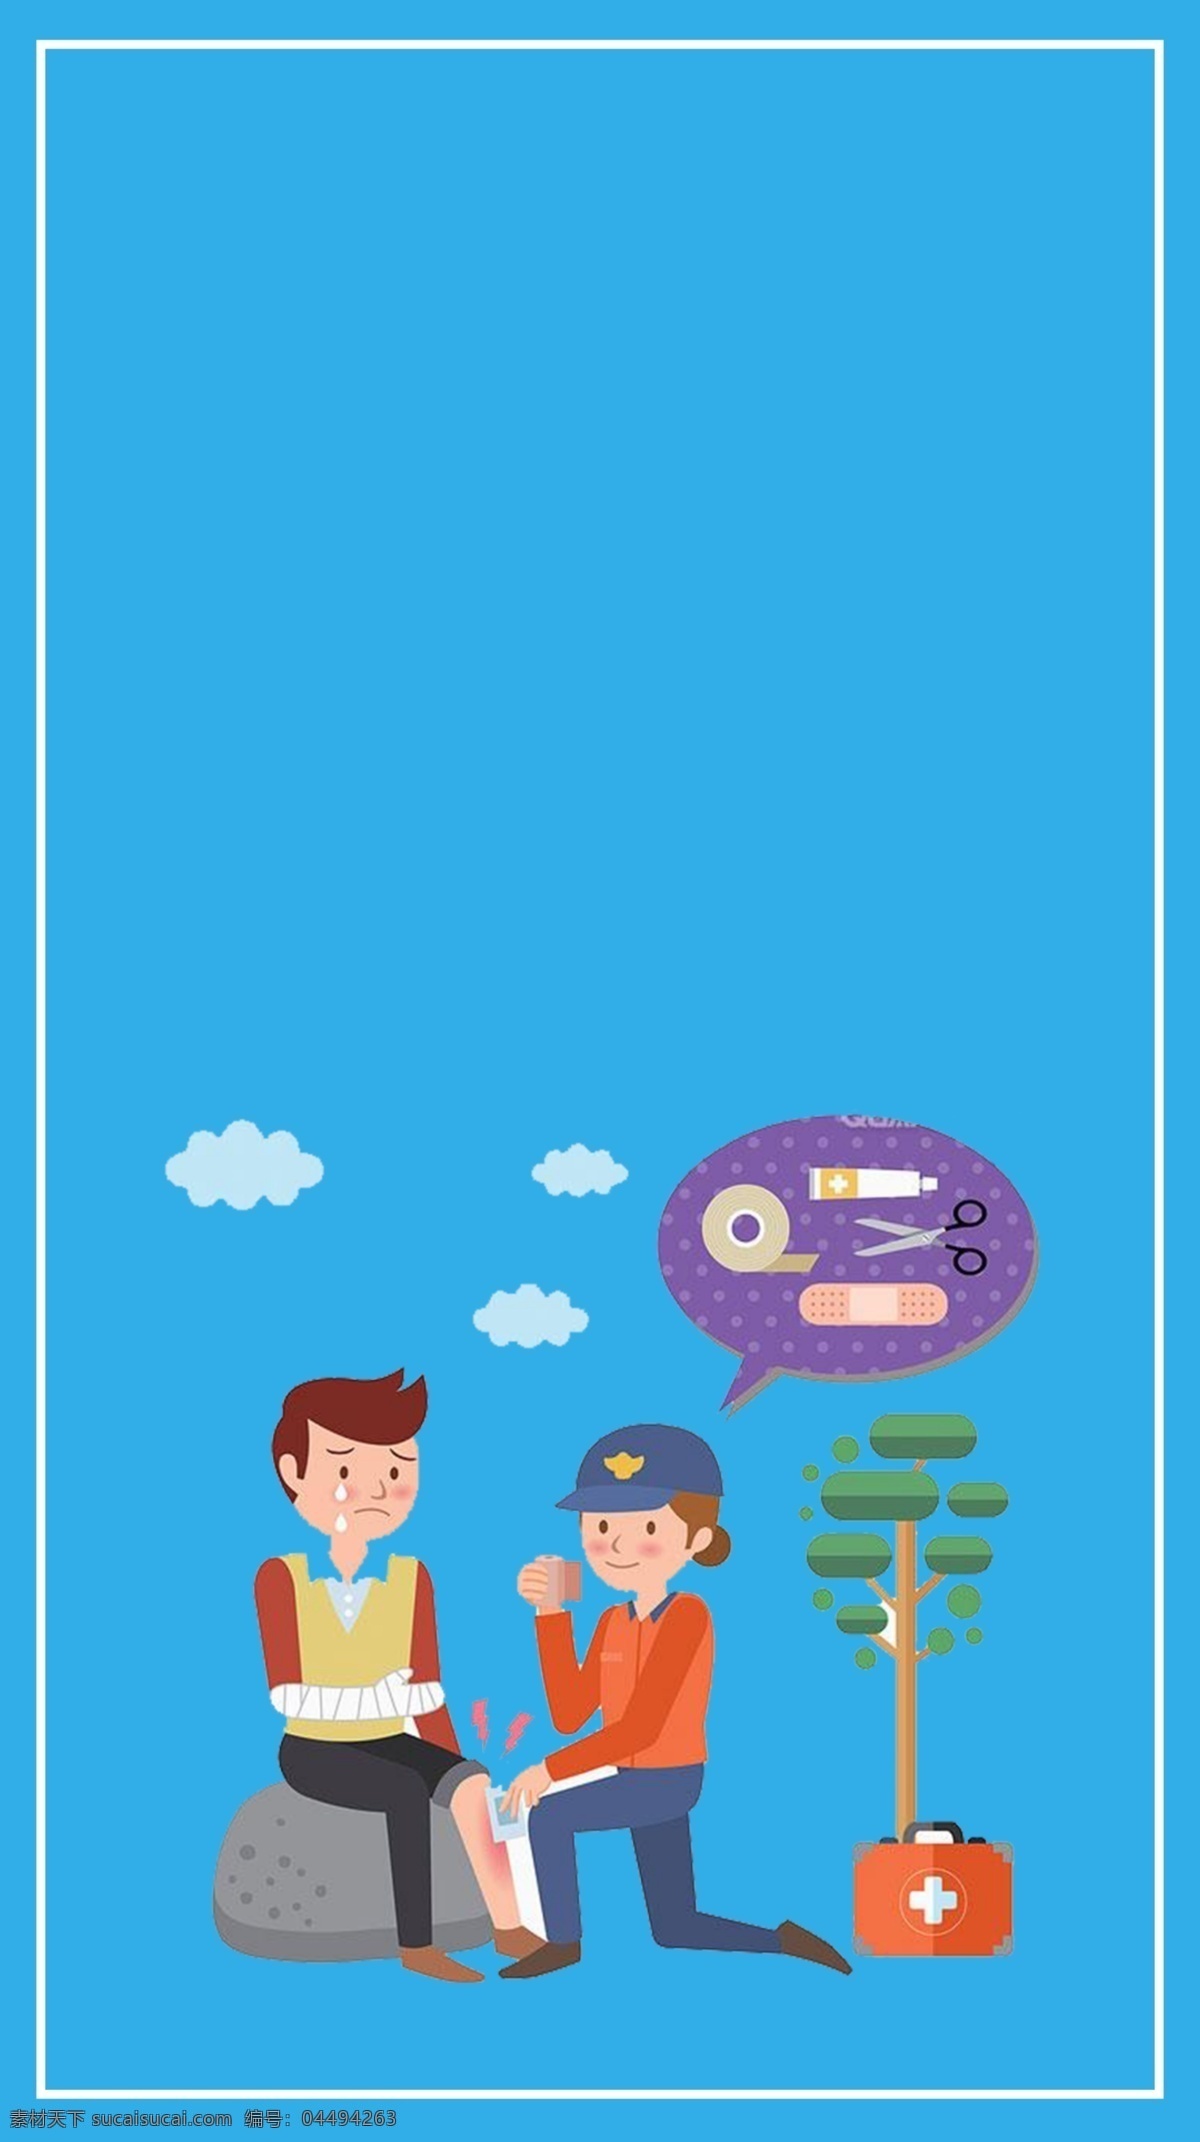 世界 急救 日 医疗 公益 手机 配 图 卡通 扁平 医生 海报